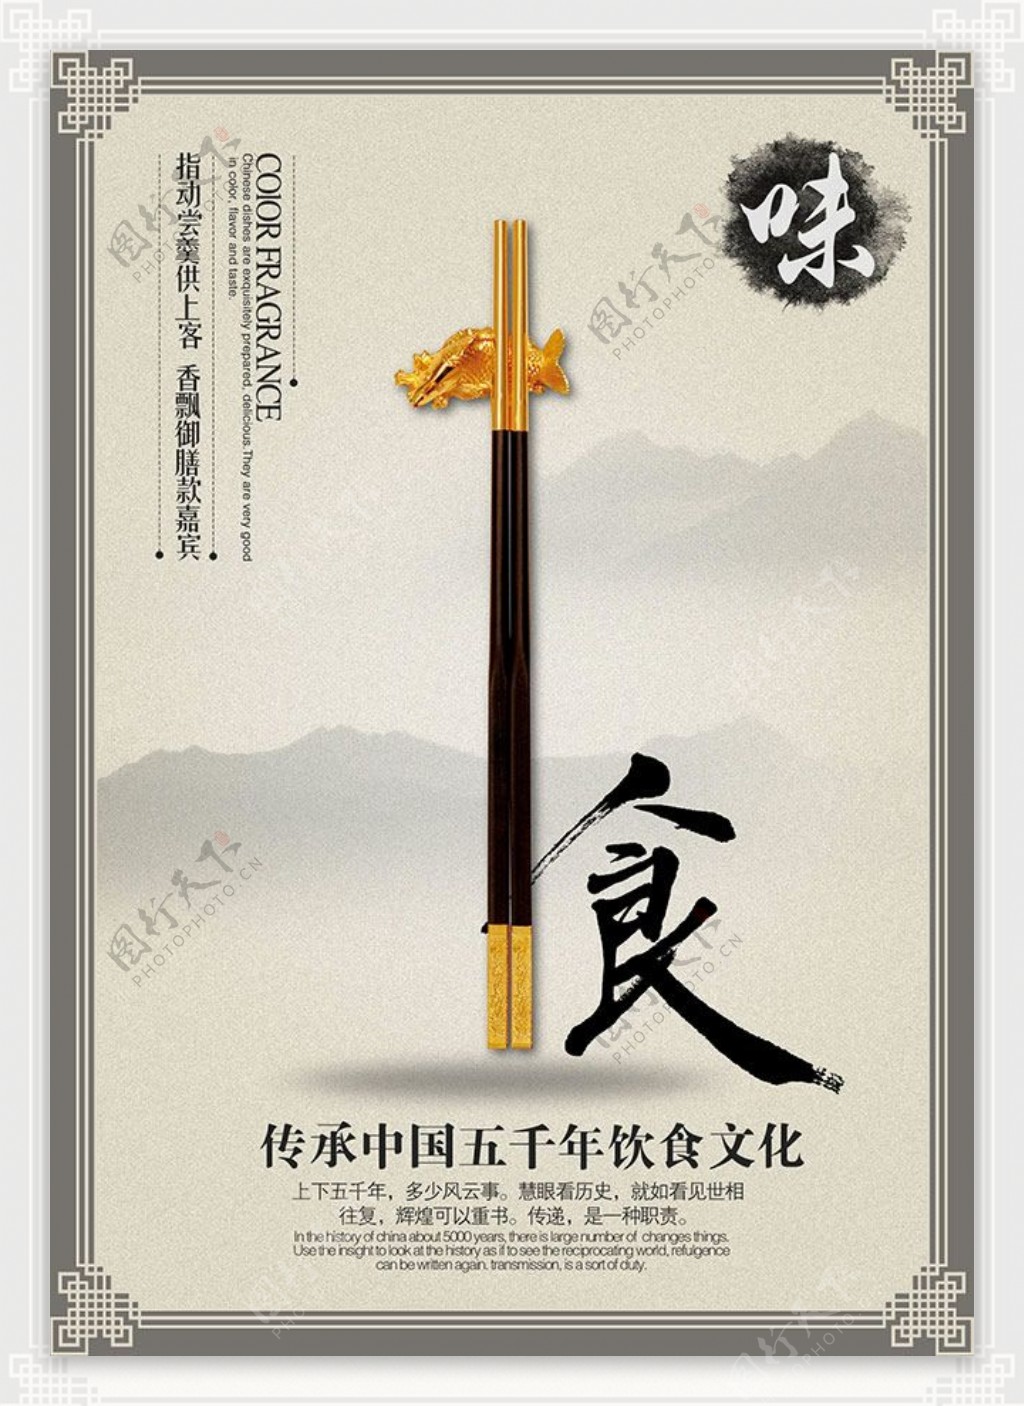 中国风淡雅饮食文化海报设计psd素材